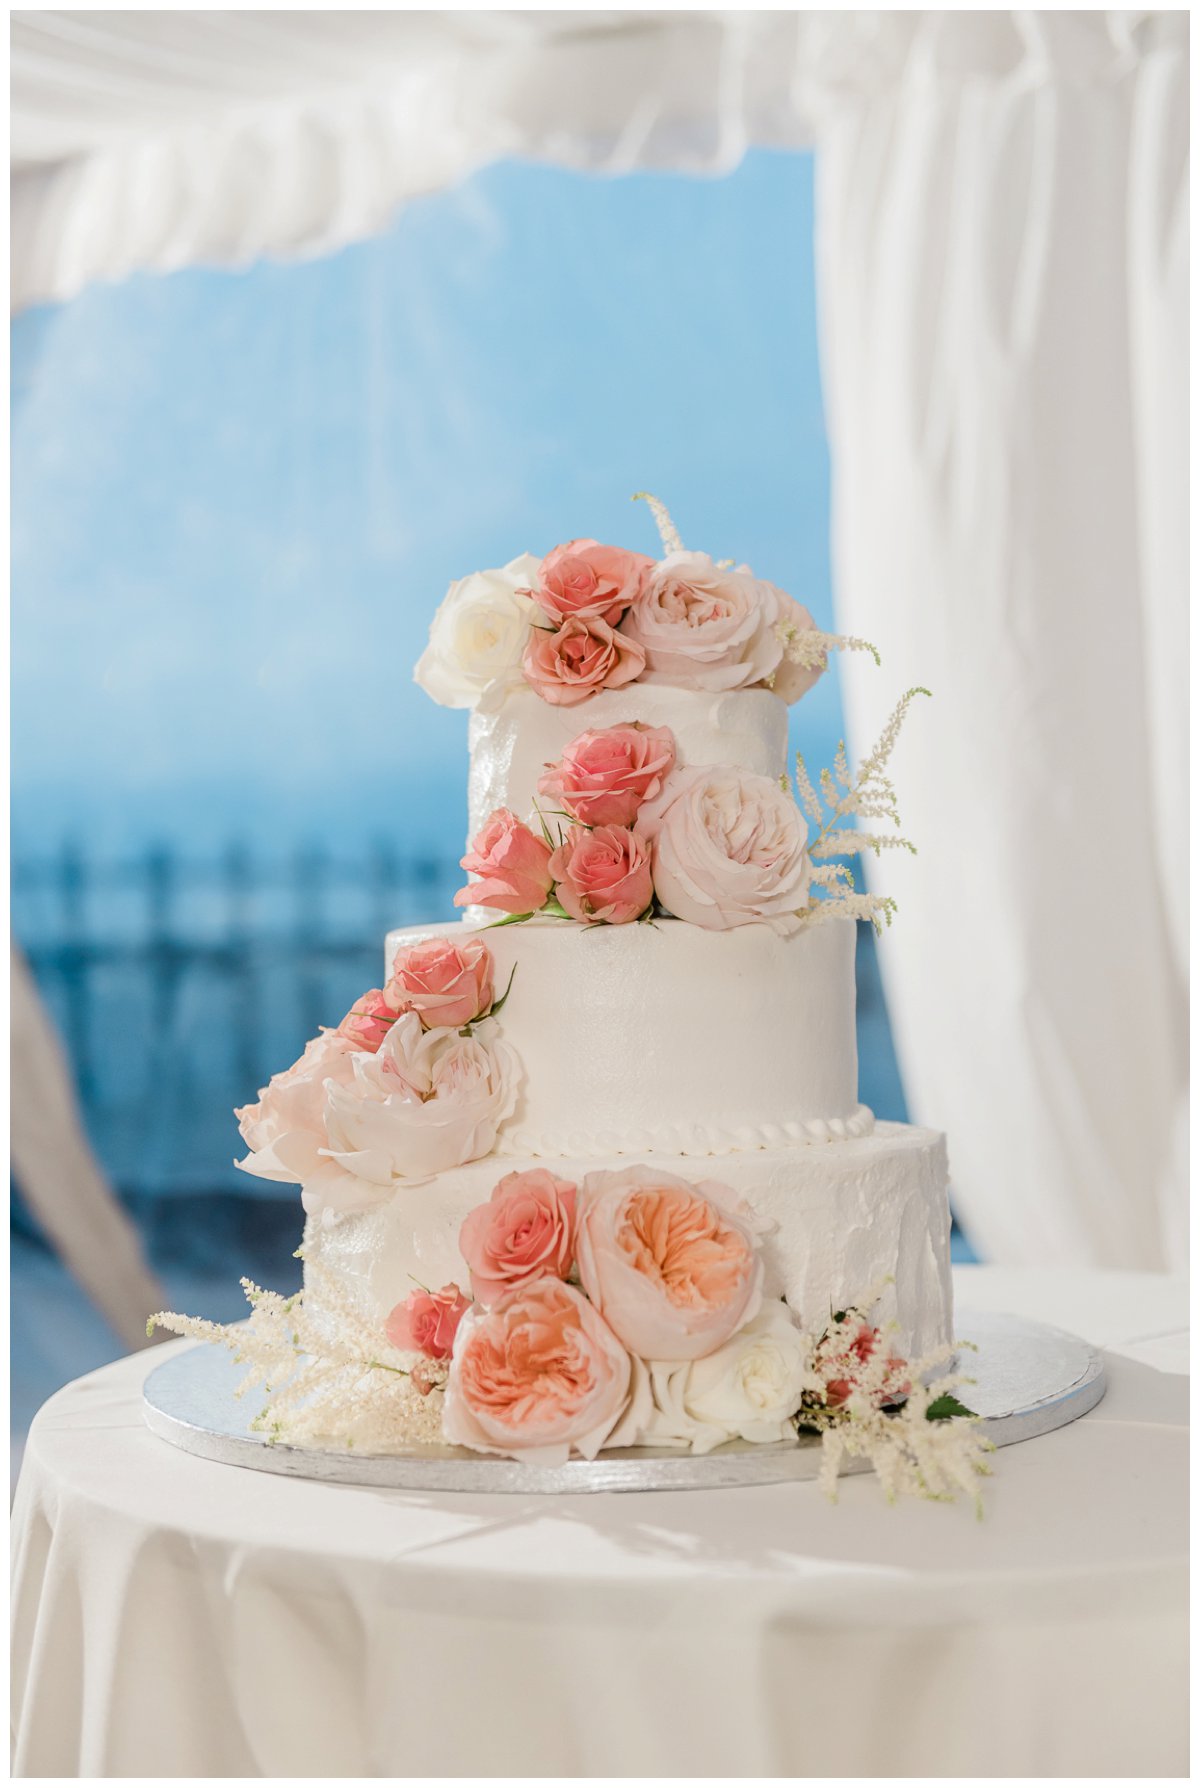 the wedding cake at an outdoor beach wedding reception in florida